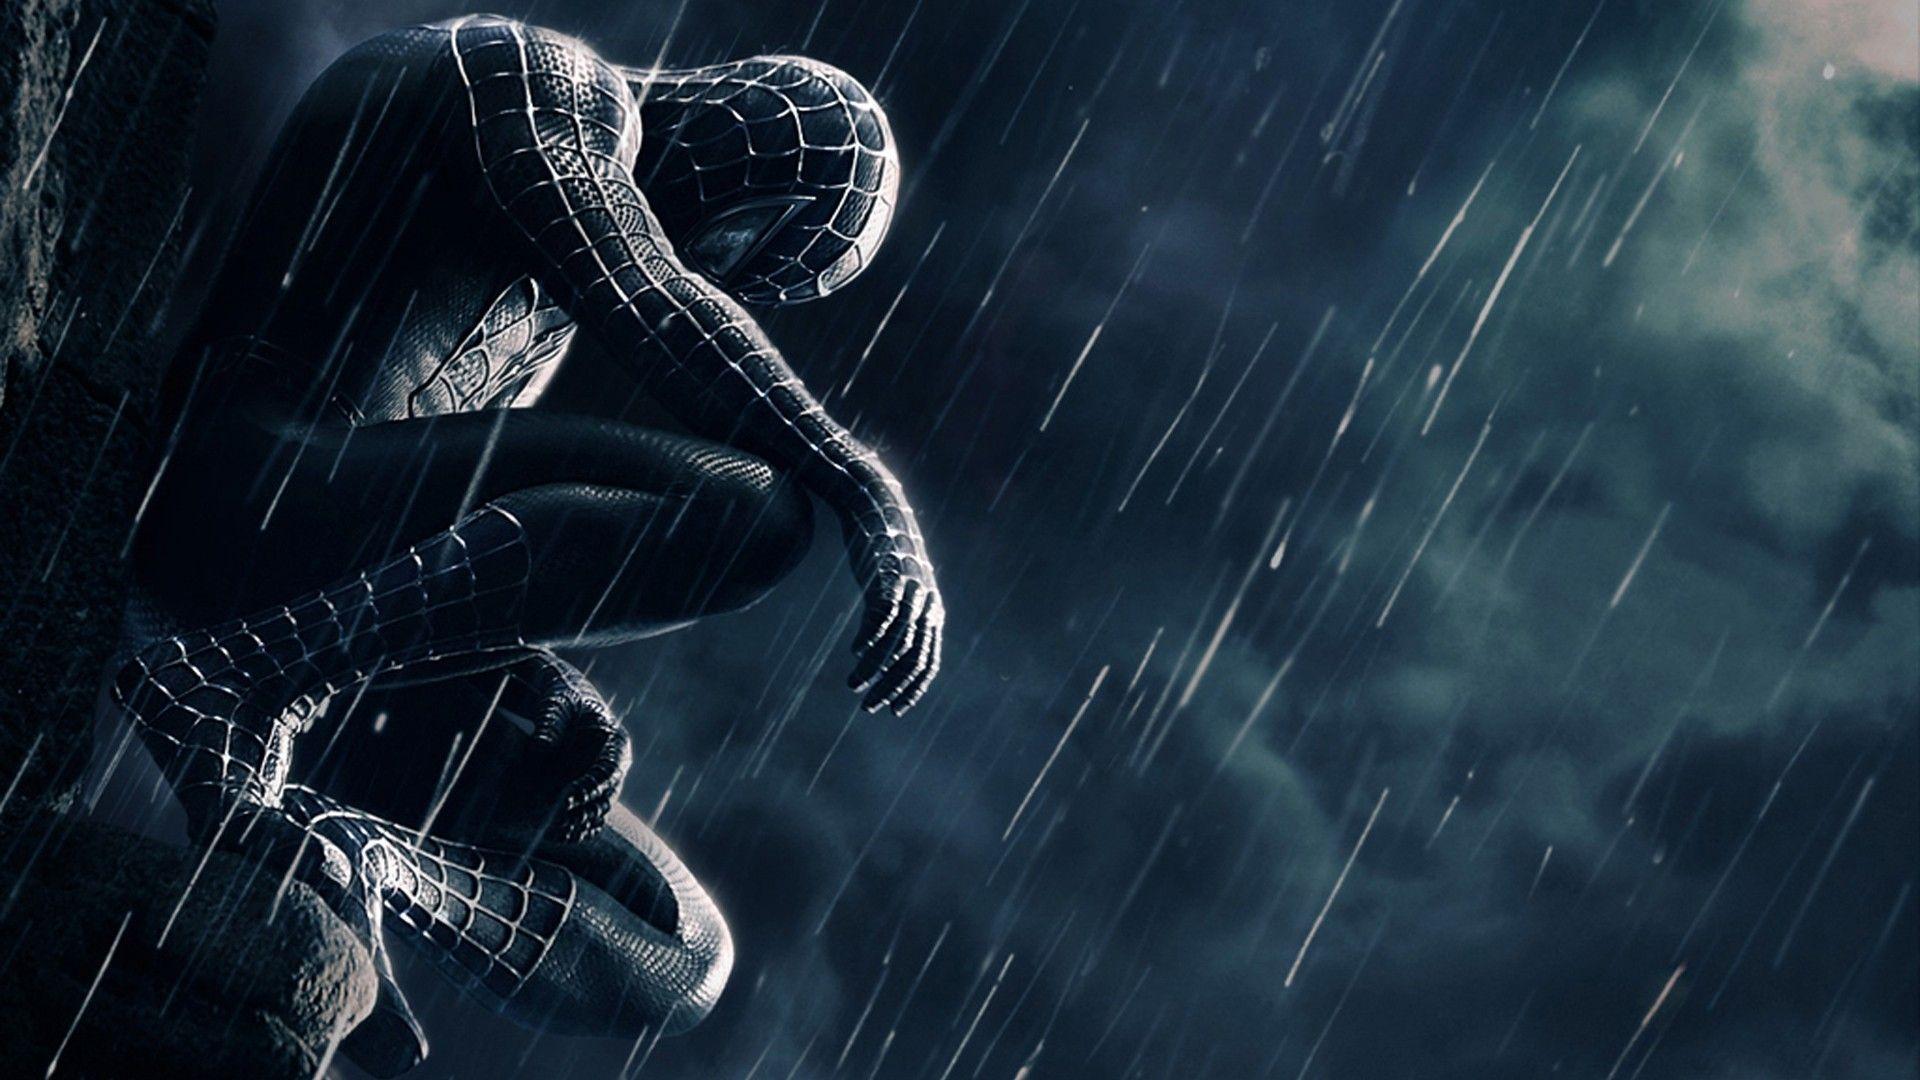 Spiderman 3 Black Suit • IOS Mode